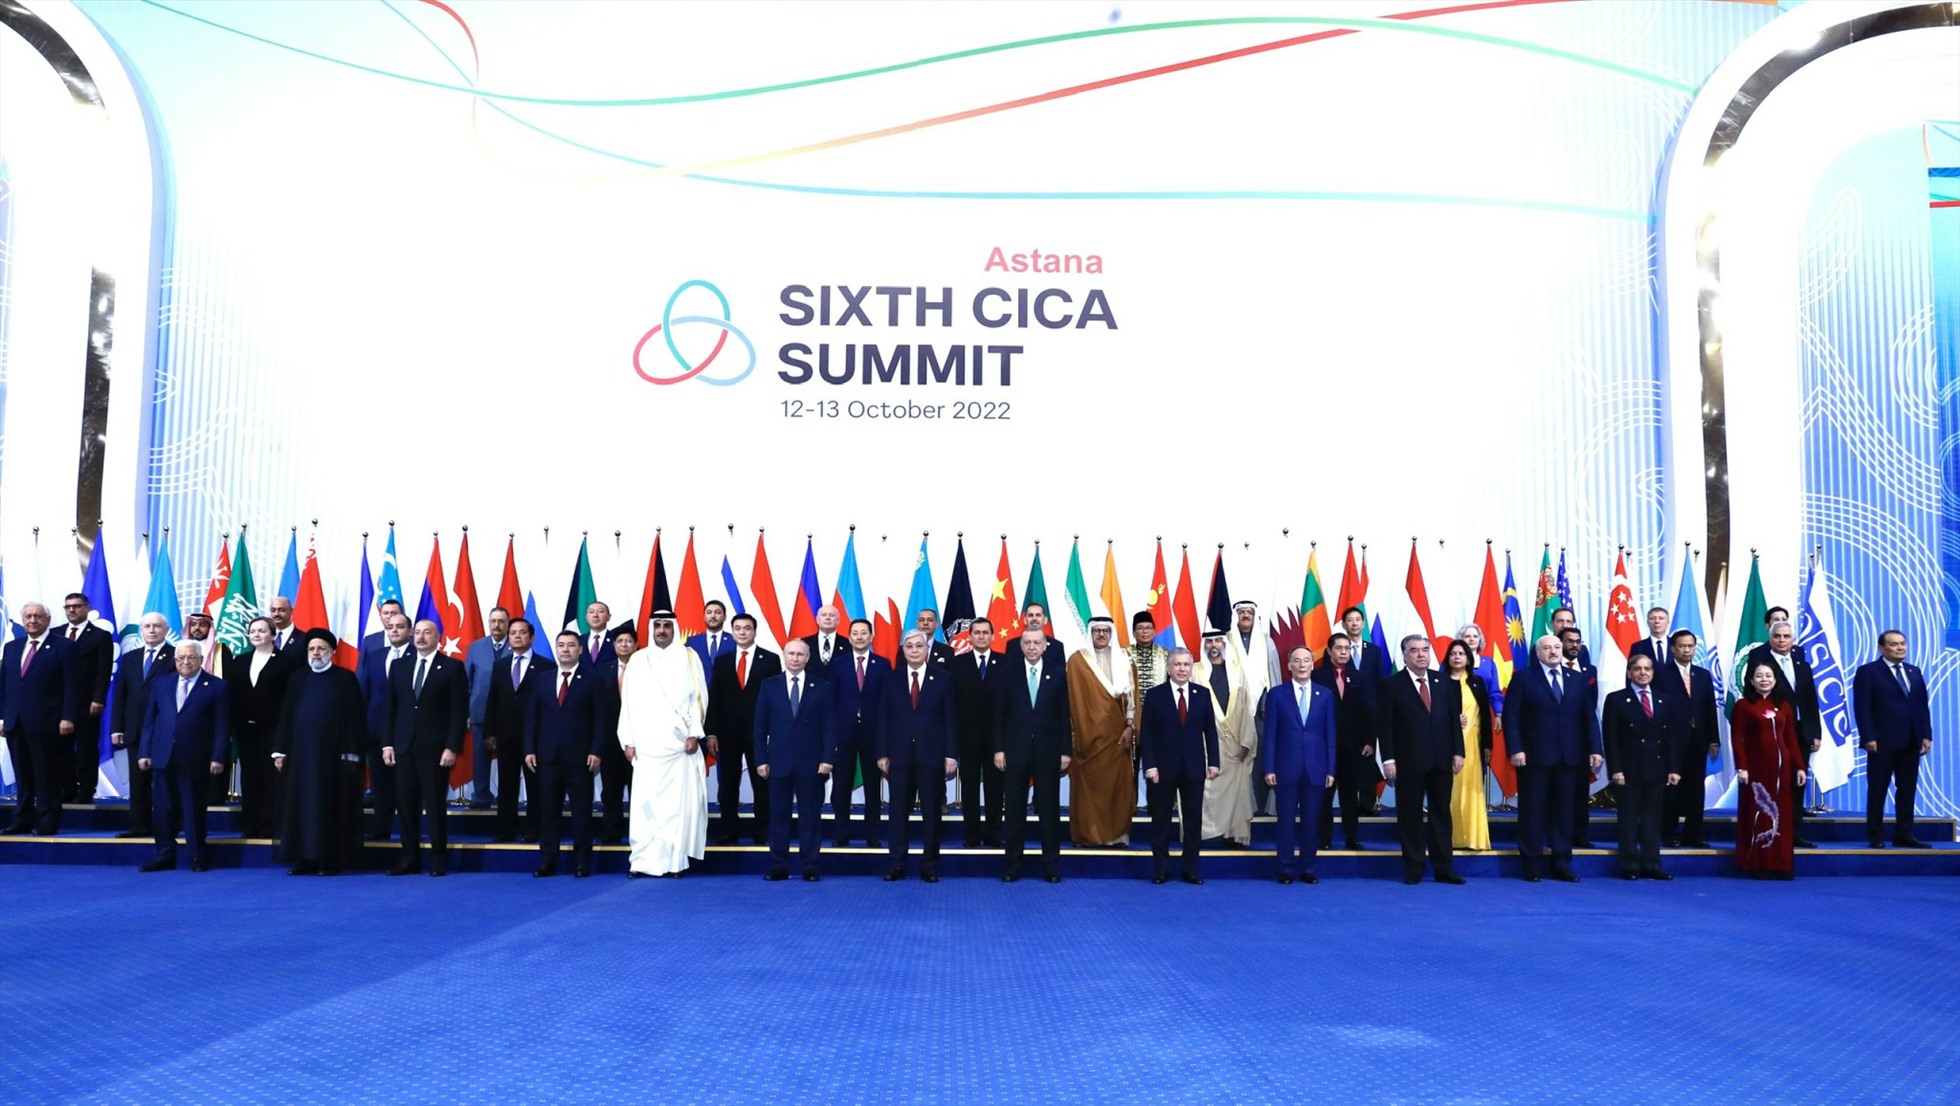 Hội nghị Thượng đỉnh lần thứ 6 về Phối hợp hành động và Các biện pháp xây dựng lòng tin ở Châu Á (CICA) tổ chức tại Thủ đô Astana, Kazakhstan. Ảnh: Bộ Ngoại giao